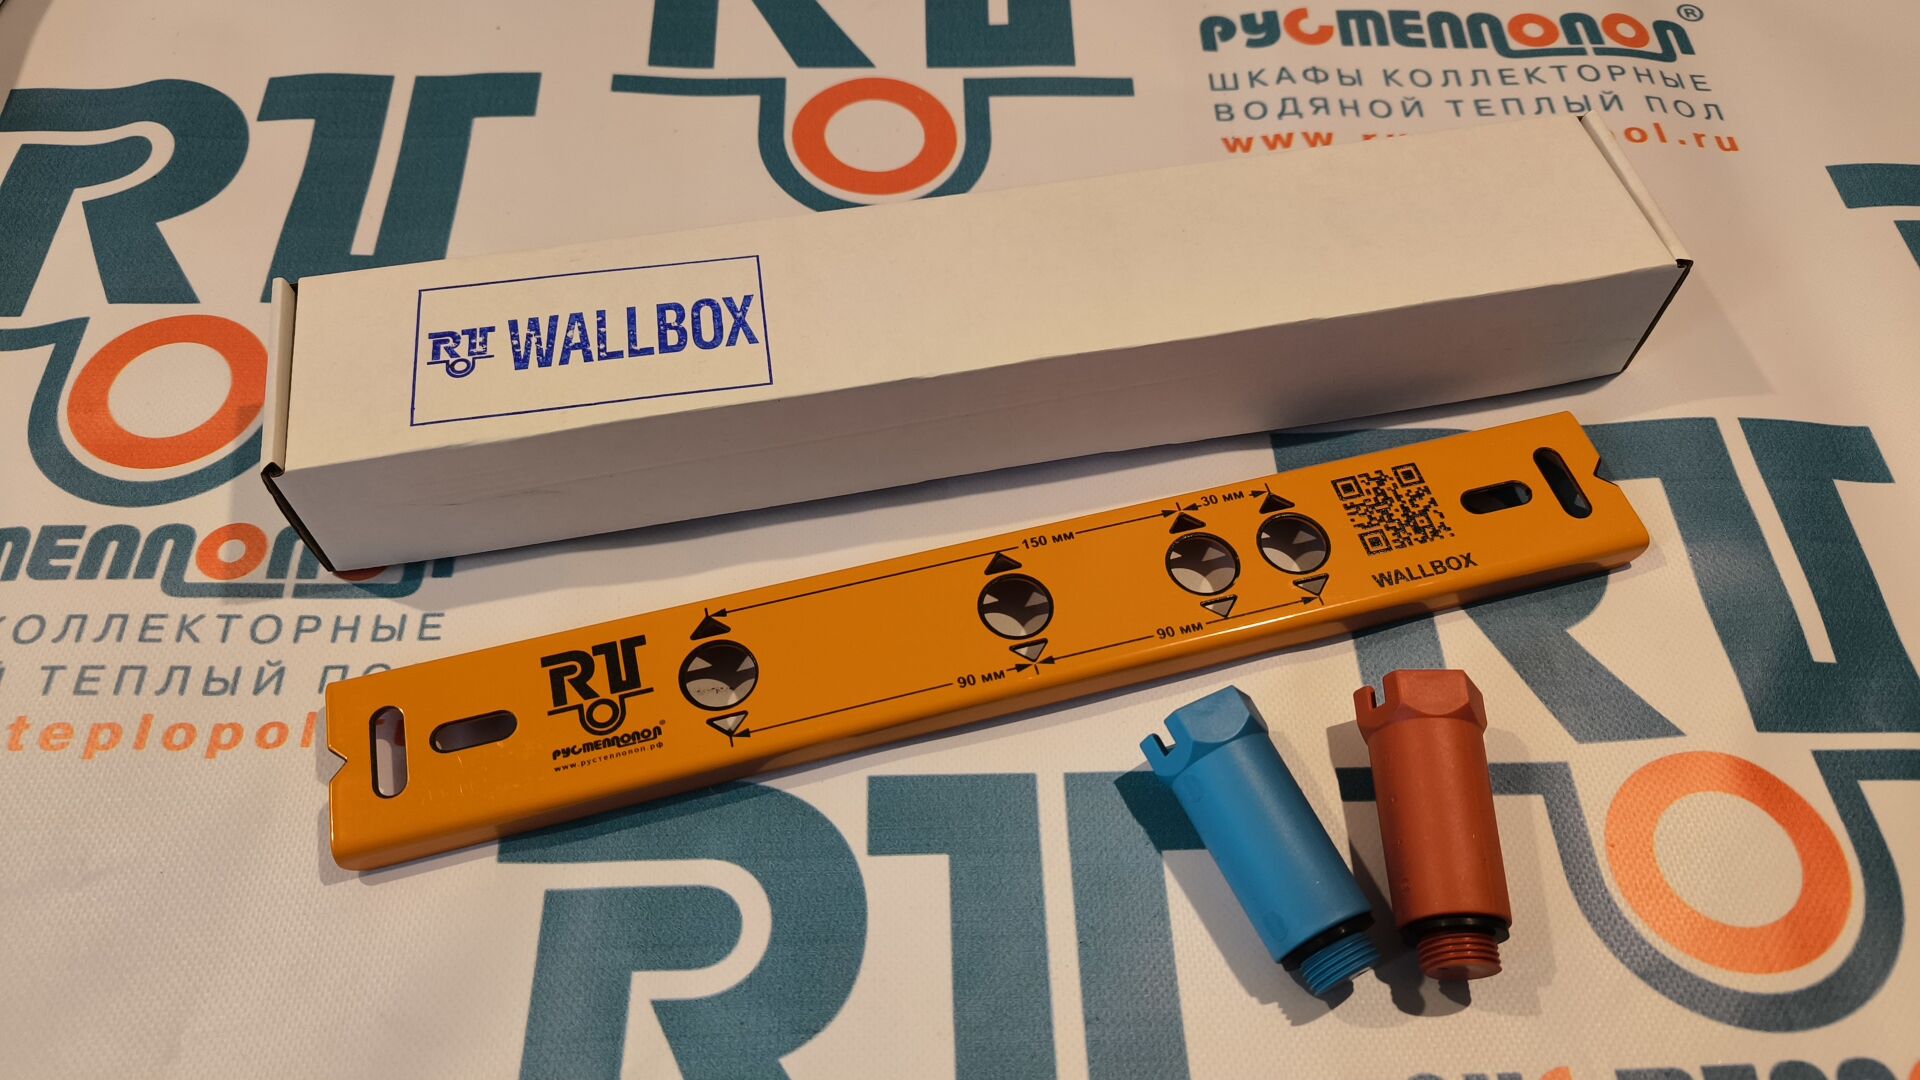 WALLBOX ручной инструмент для профессионального монтажа водорозеток 1